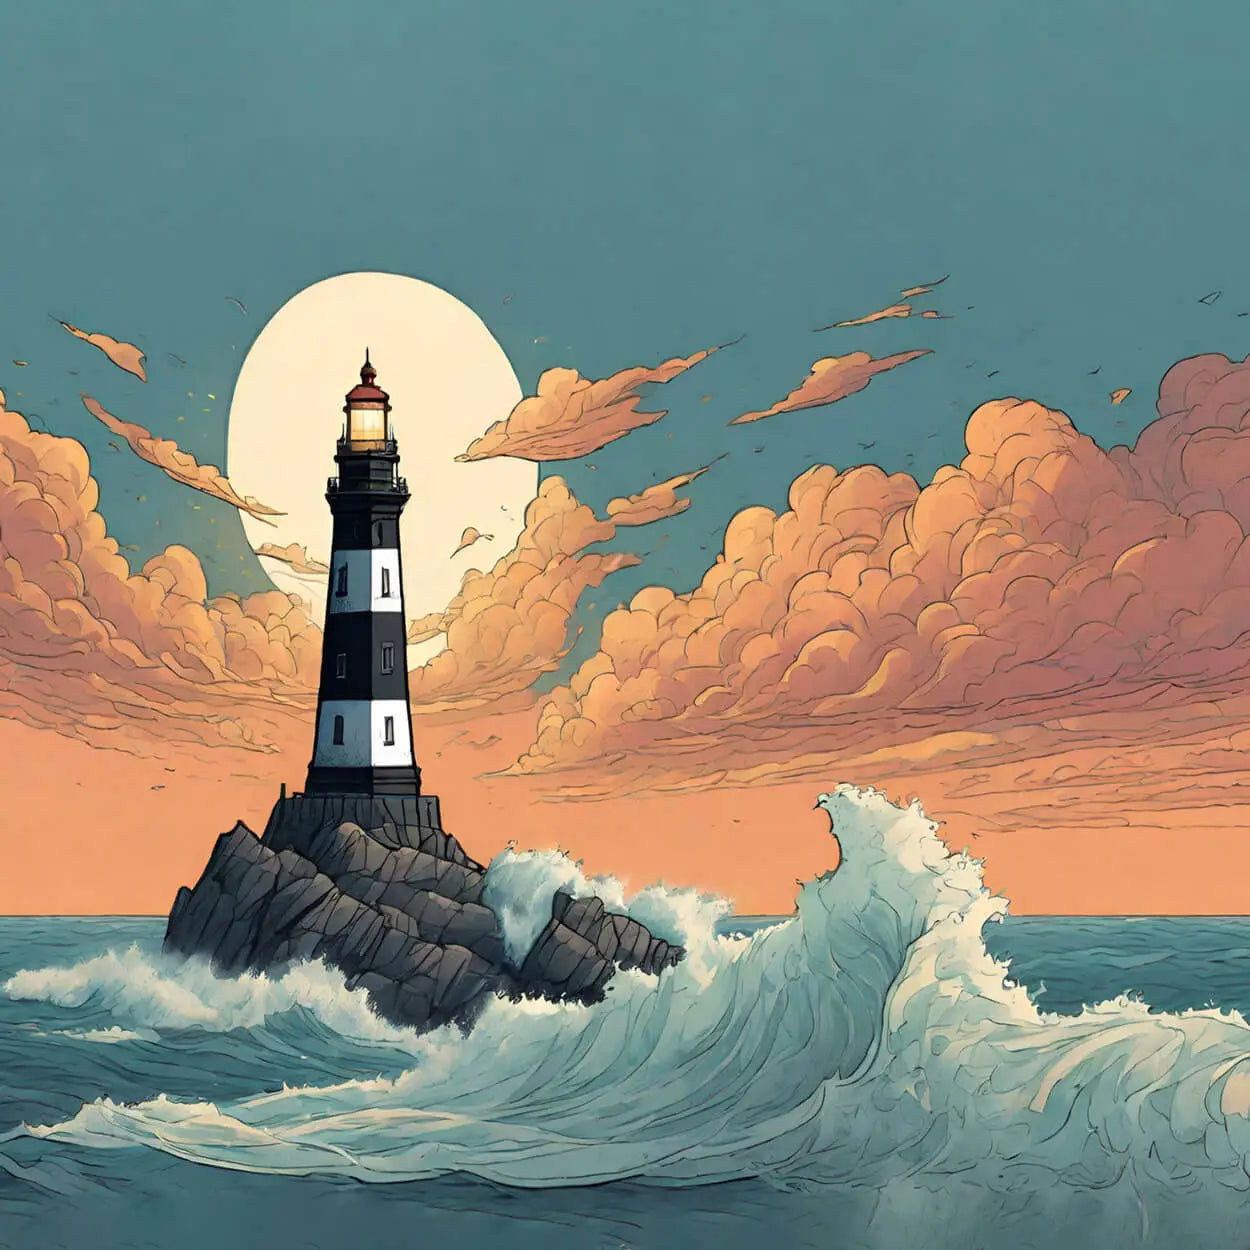 Image de couverture, représente un phare avec l'océan déchaîné 